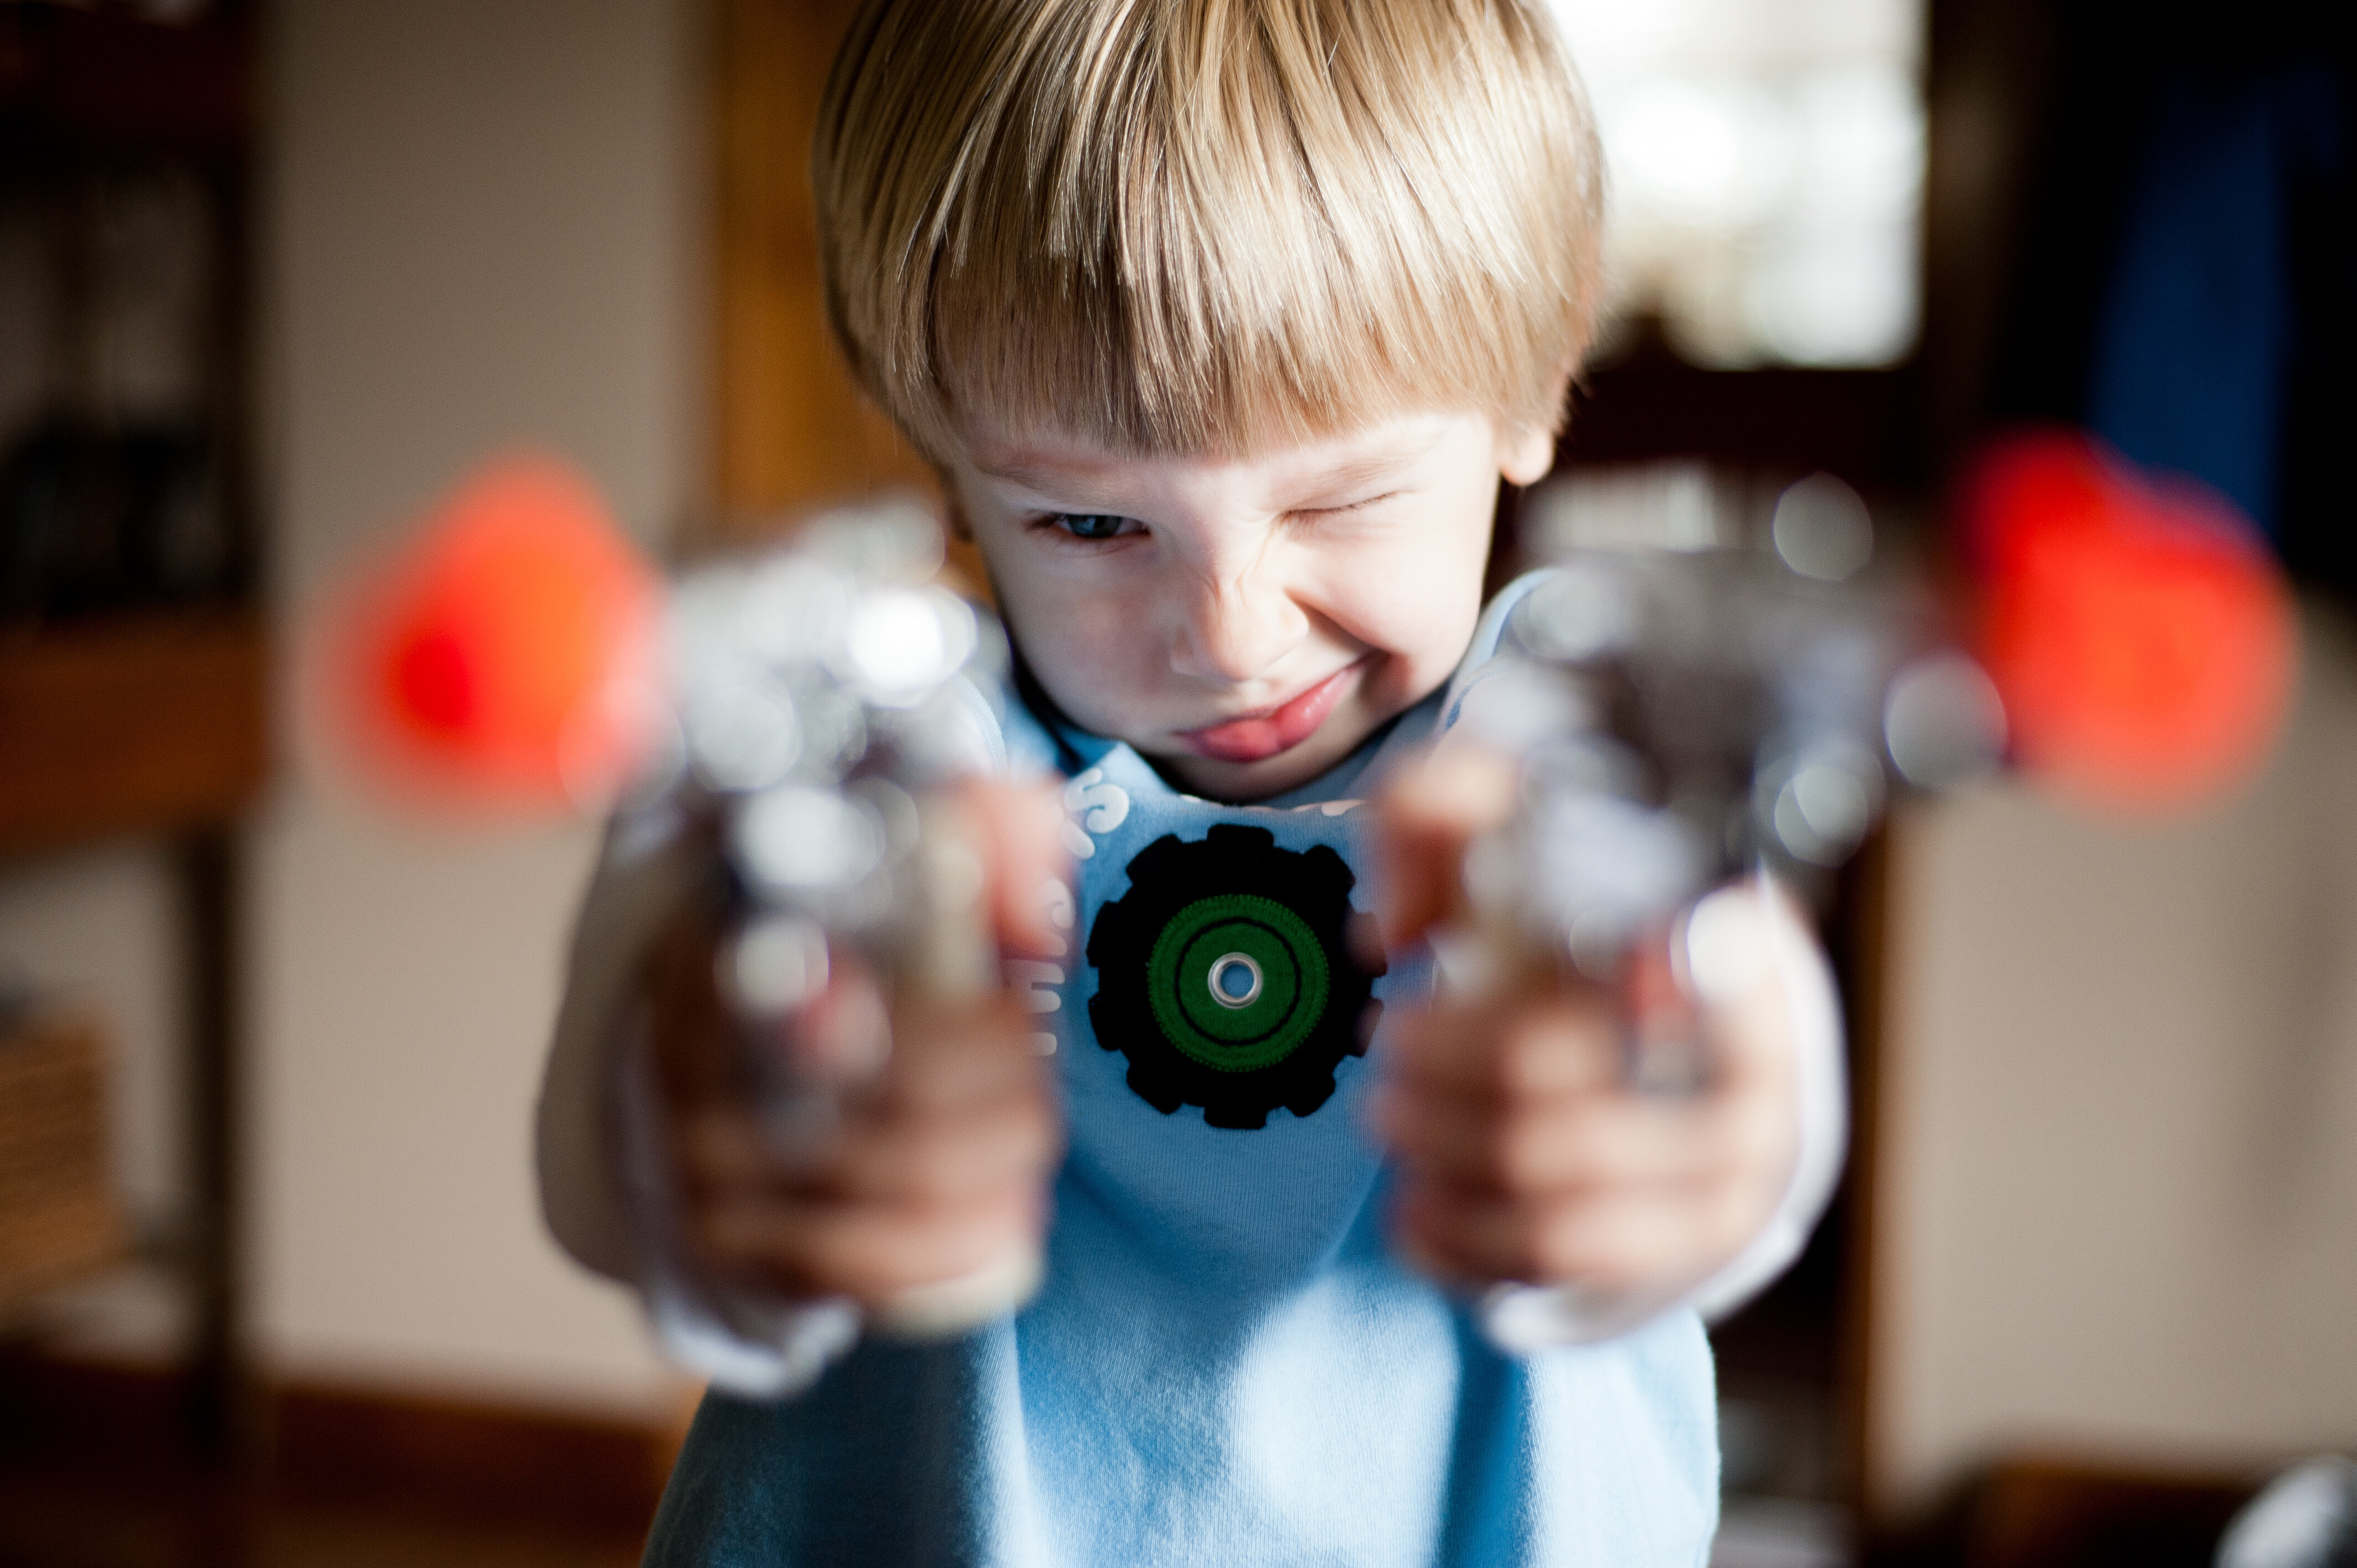 toy gun videos for kids